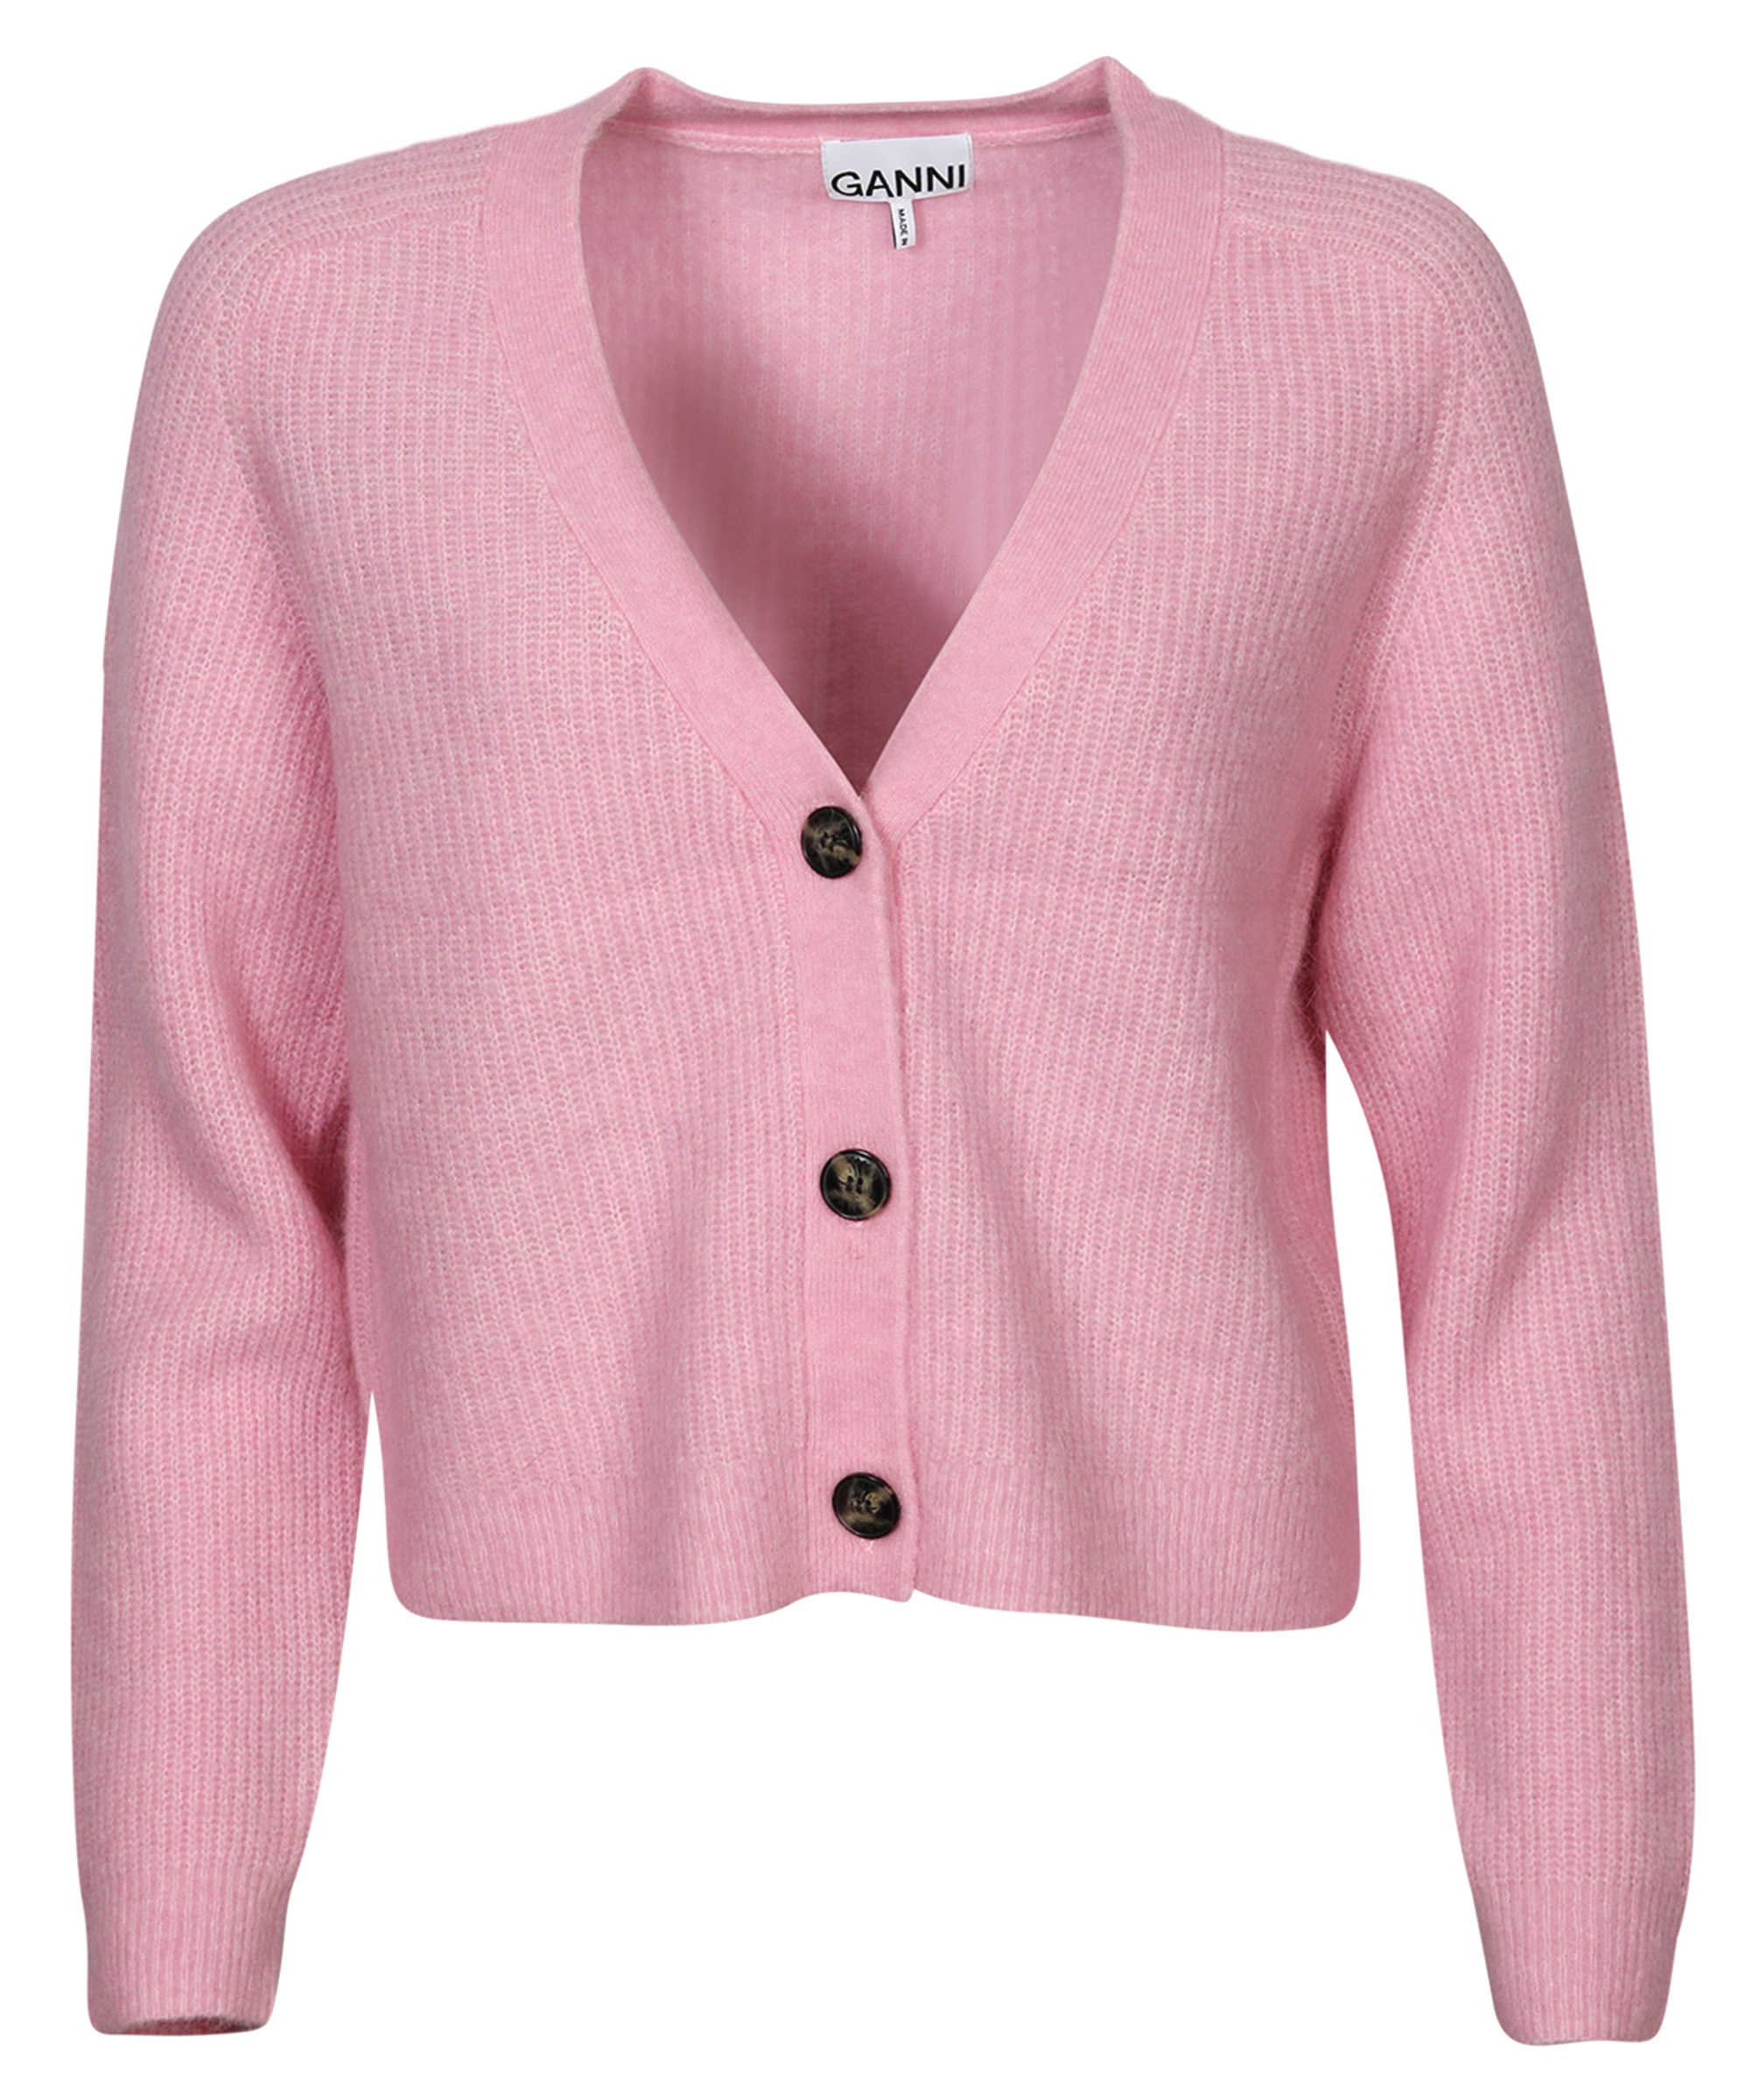 Ganni Wool Cardigan Pink